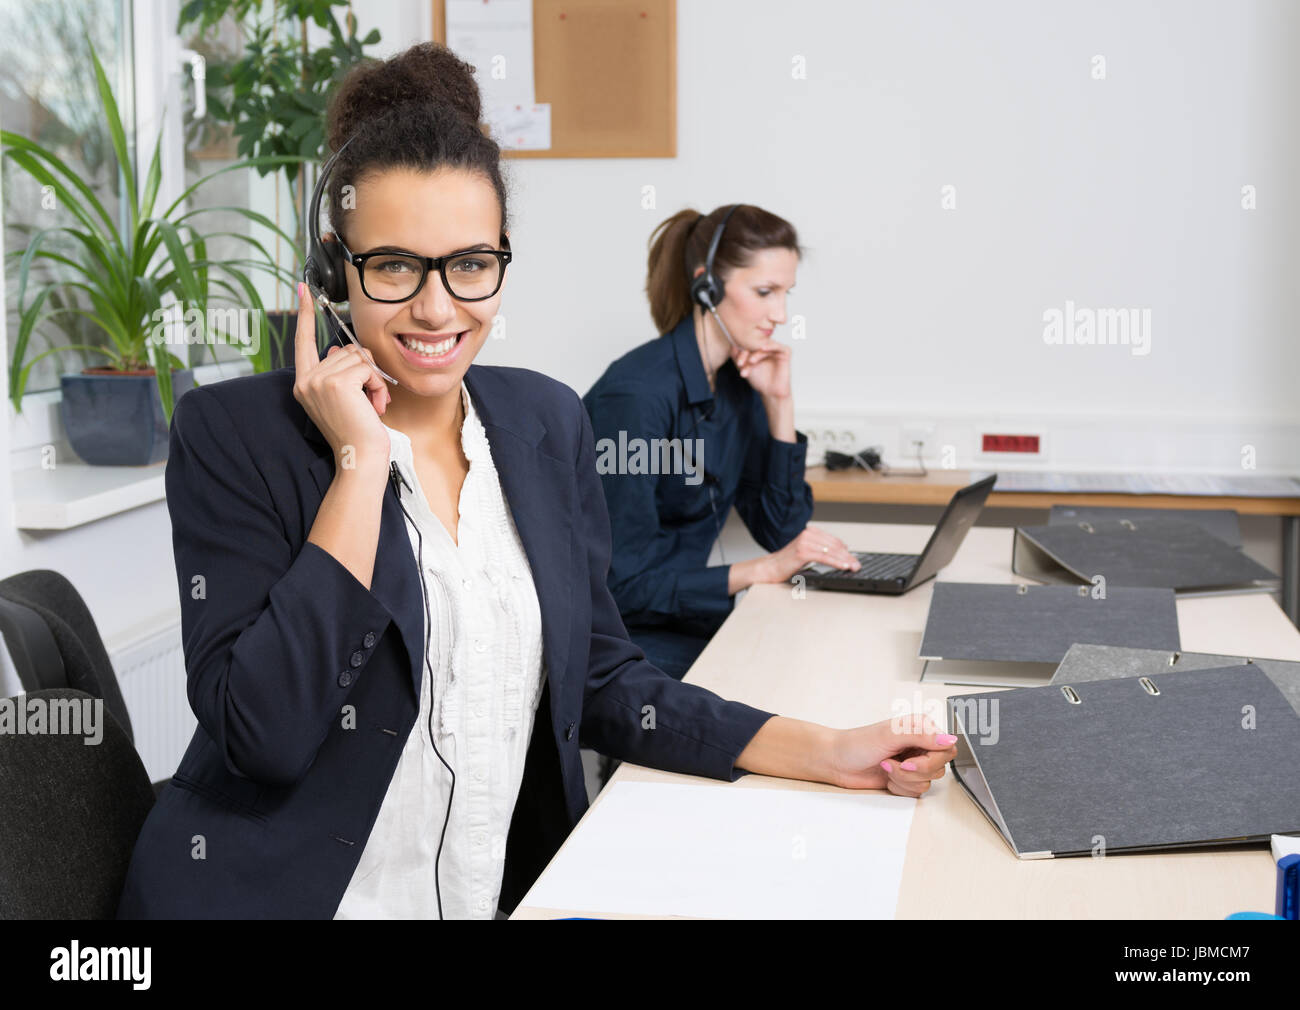 Eine junge Büroangestellte mit Headset sitzt vor ihren Akten im Büro. Eine weitere Frau mit Headset befindet sich im Hintergrund (unscharf). Foto Stock